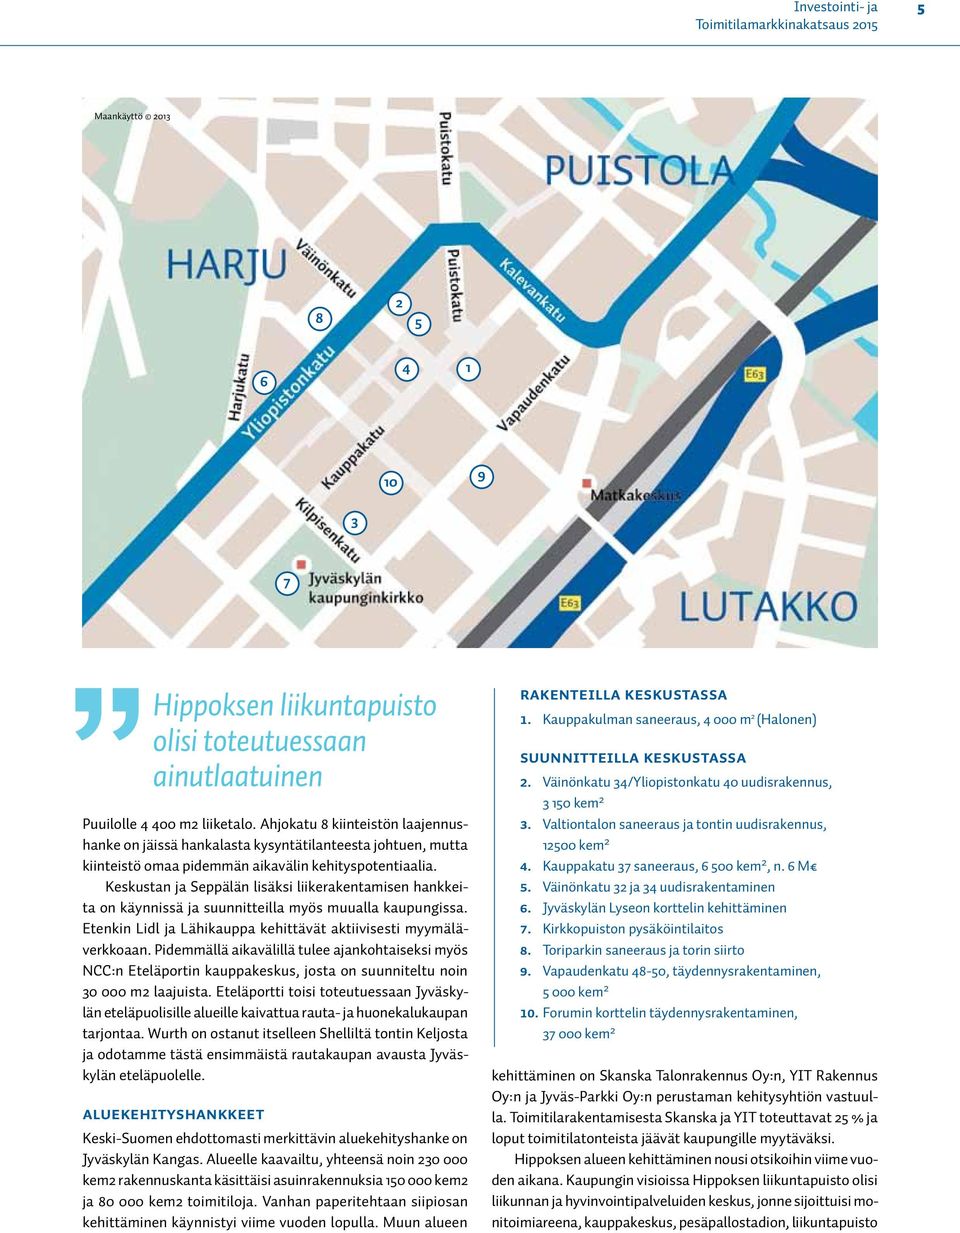 Keskustan ja Seppälän lisäksi liikerakentamisen hankkeita on käynnissä ja suunnitteilla myös muualla kaupungissa. Etenkin Lidl ja Lähikauppa kehittävät aktiivisesti myymäläverkkoaan.